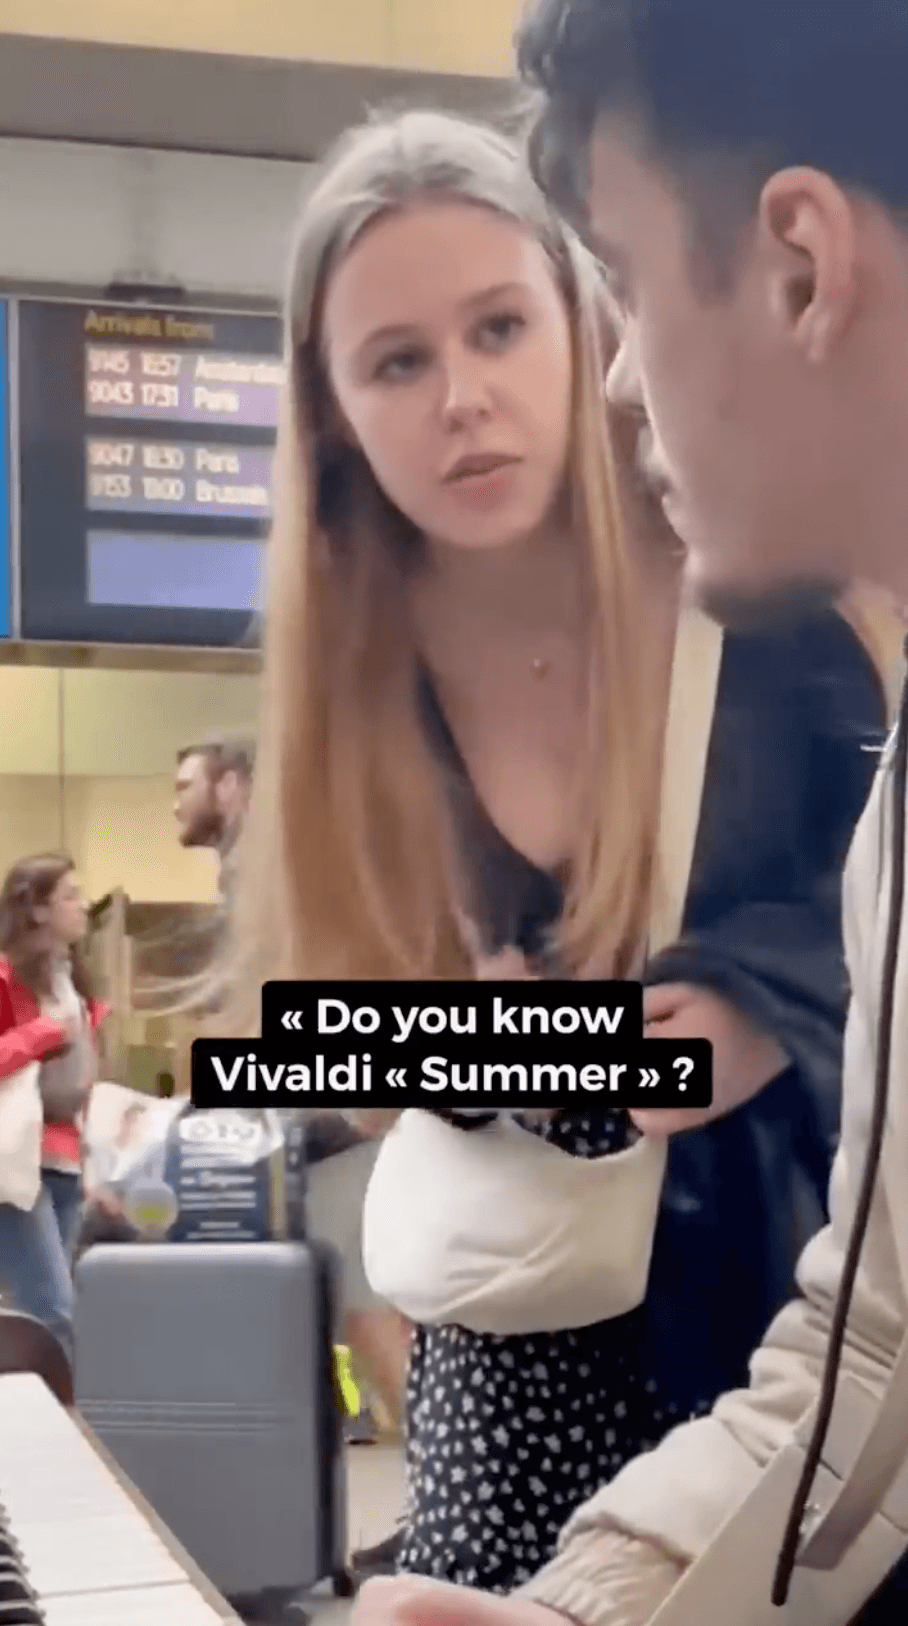 Ugne Liepa Zuklyte asks Aurélien Froissart if he can play Vivalidi's Summer. (Courtesy of Aurélien Froissart)